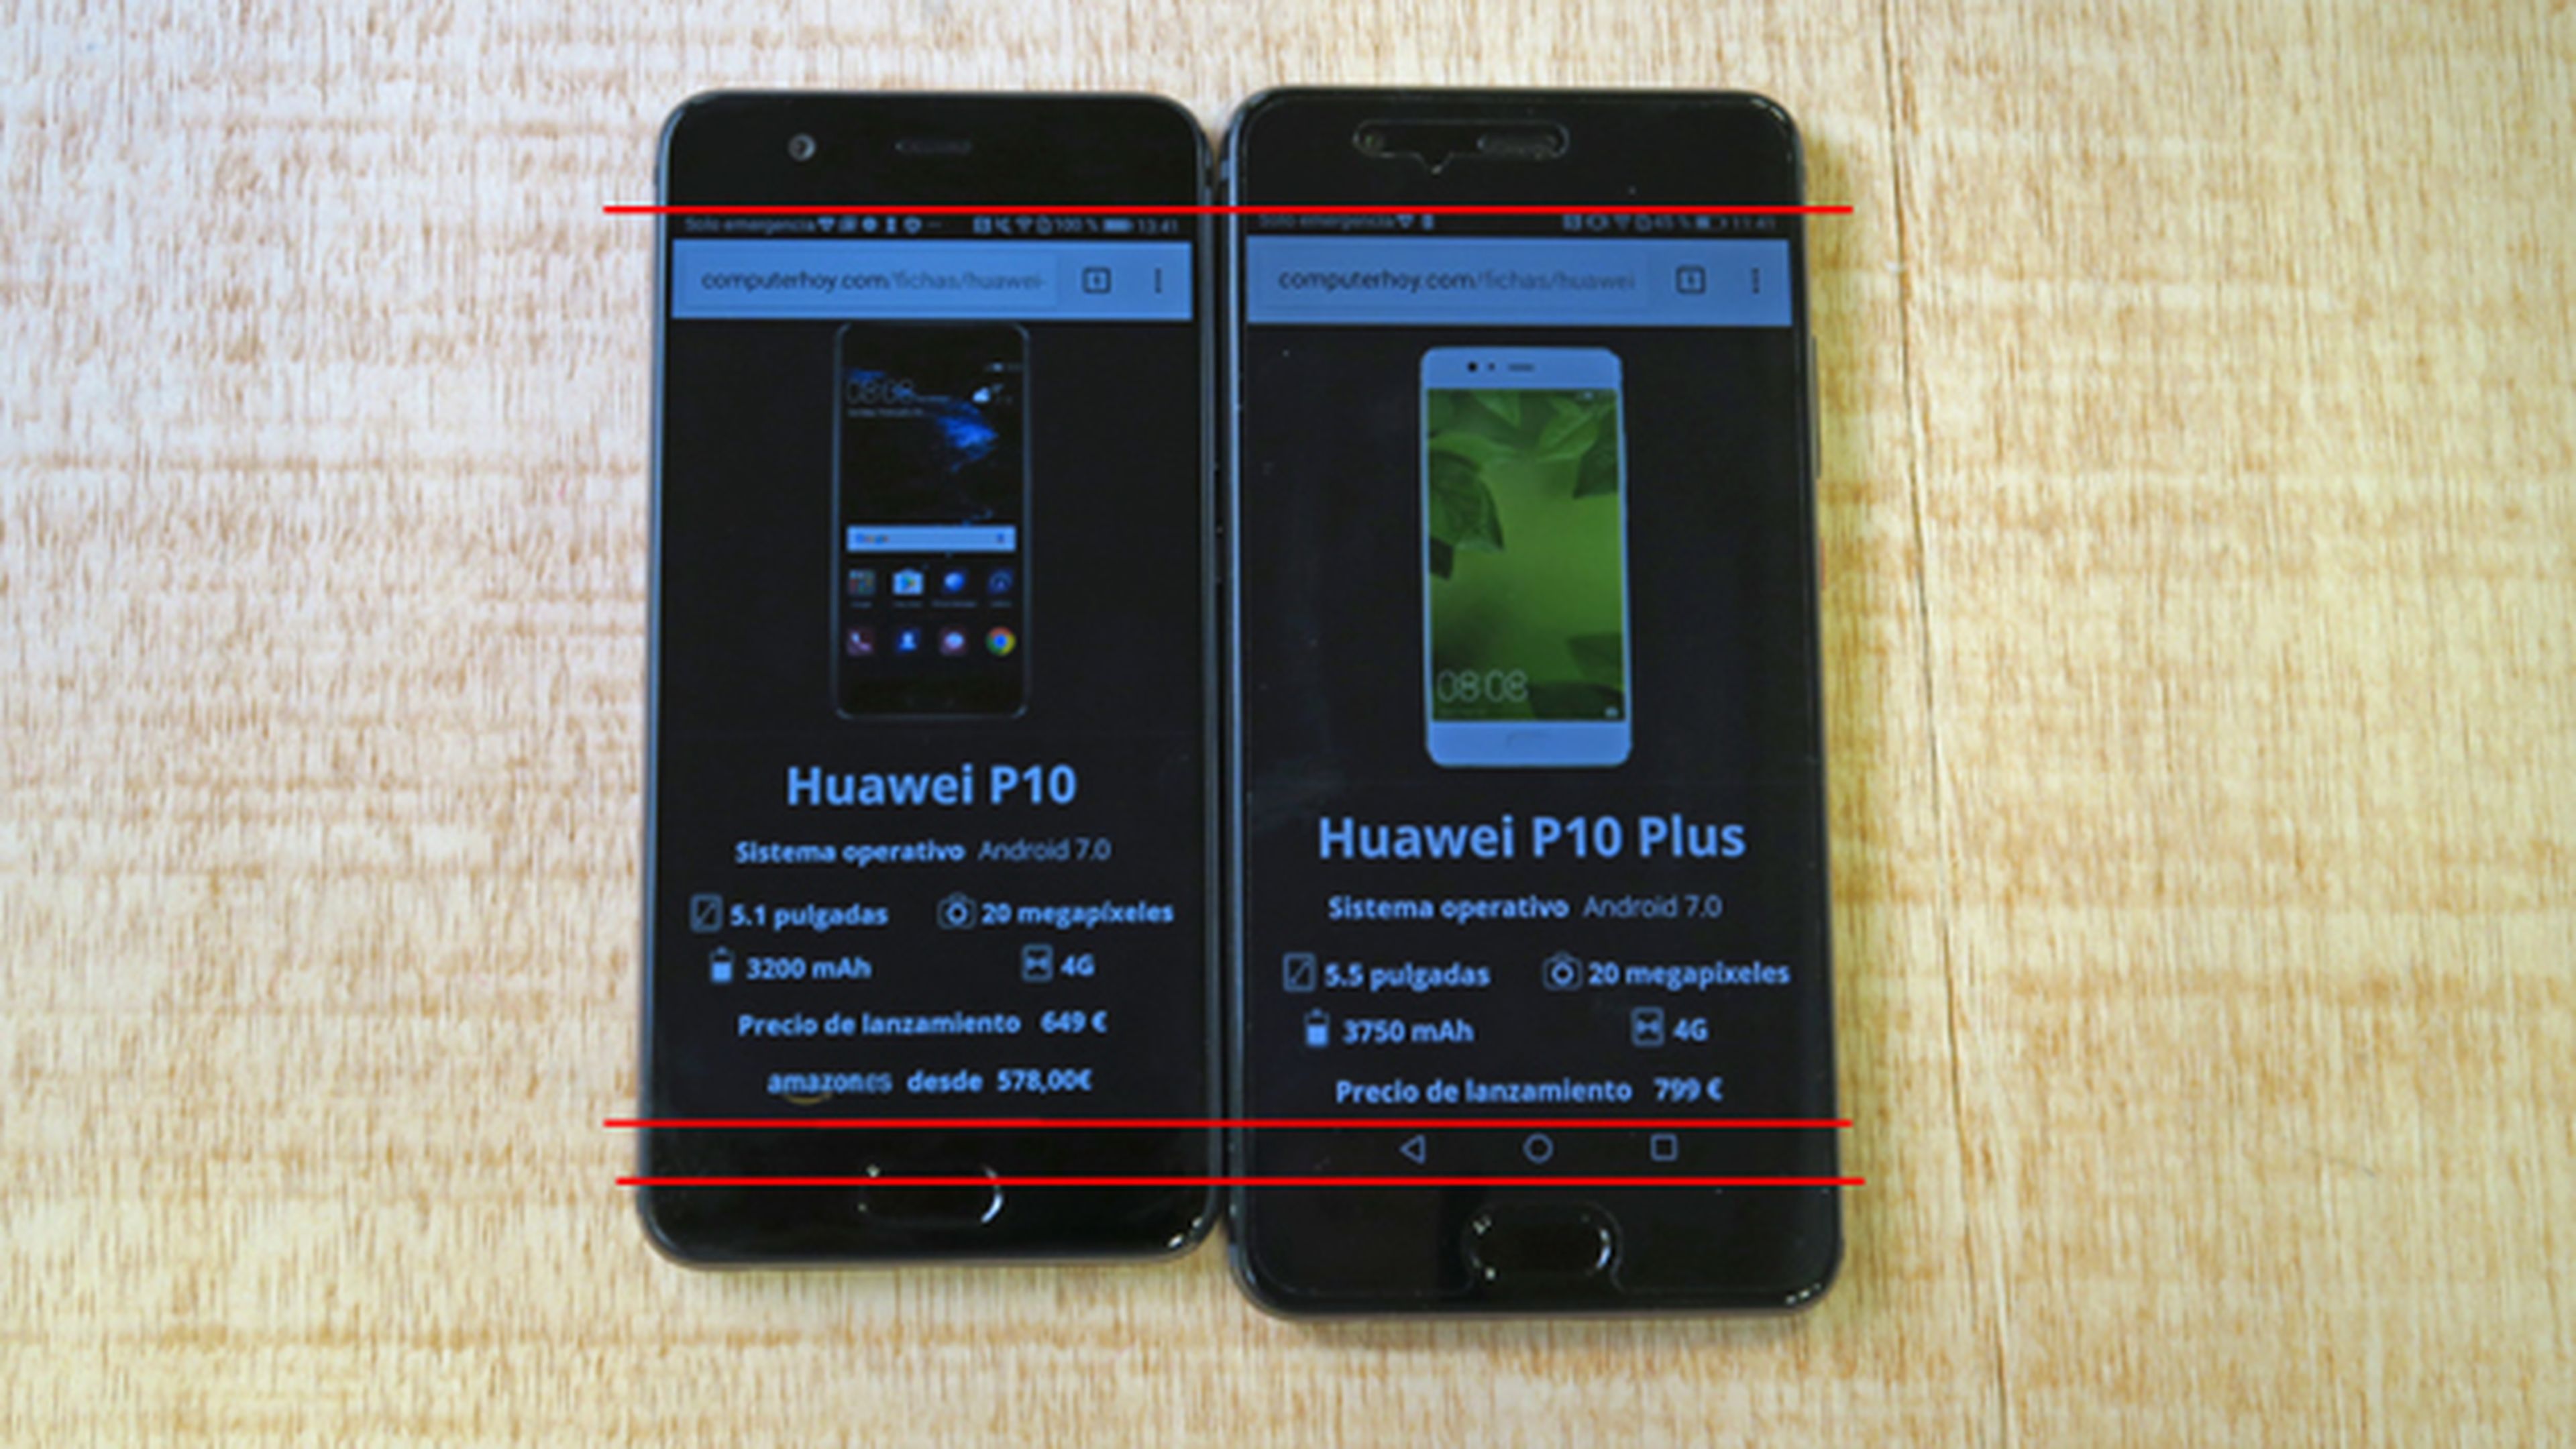 Diferencia de pantalla entre el P10 y el P10 Plus